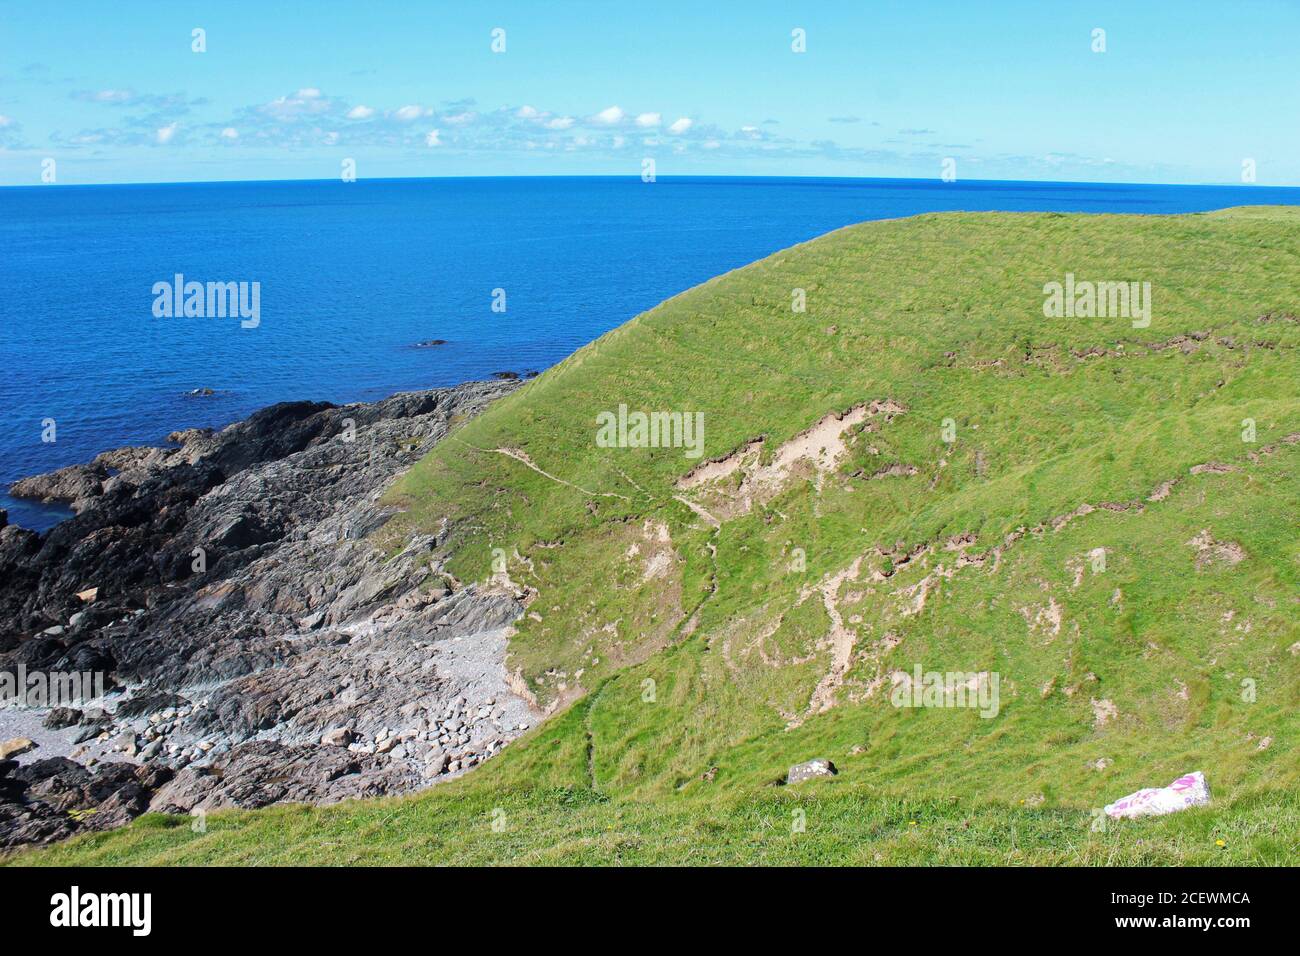 Magnifique paysage de la côte galloise, y compris colline verte, côte rocheuse et mer bleue à Porth Colmen, au nord du pays de Galles Banque D'Images